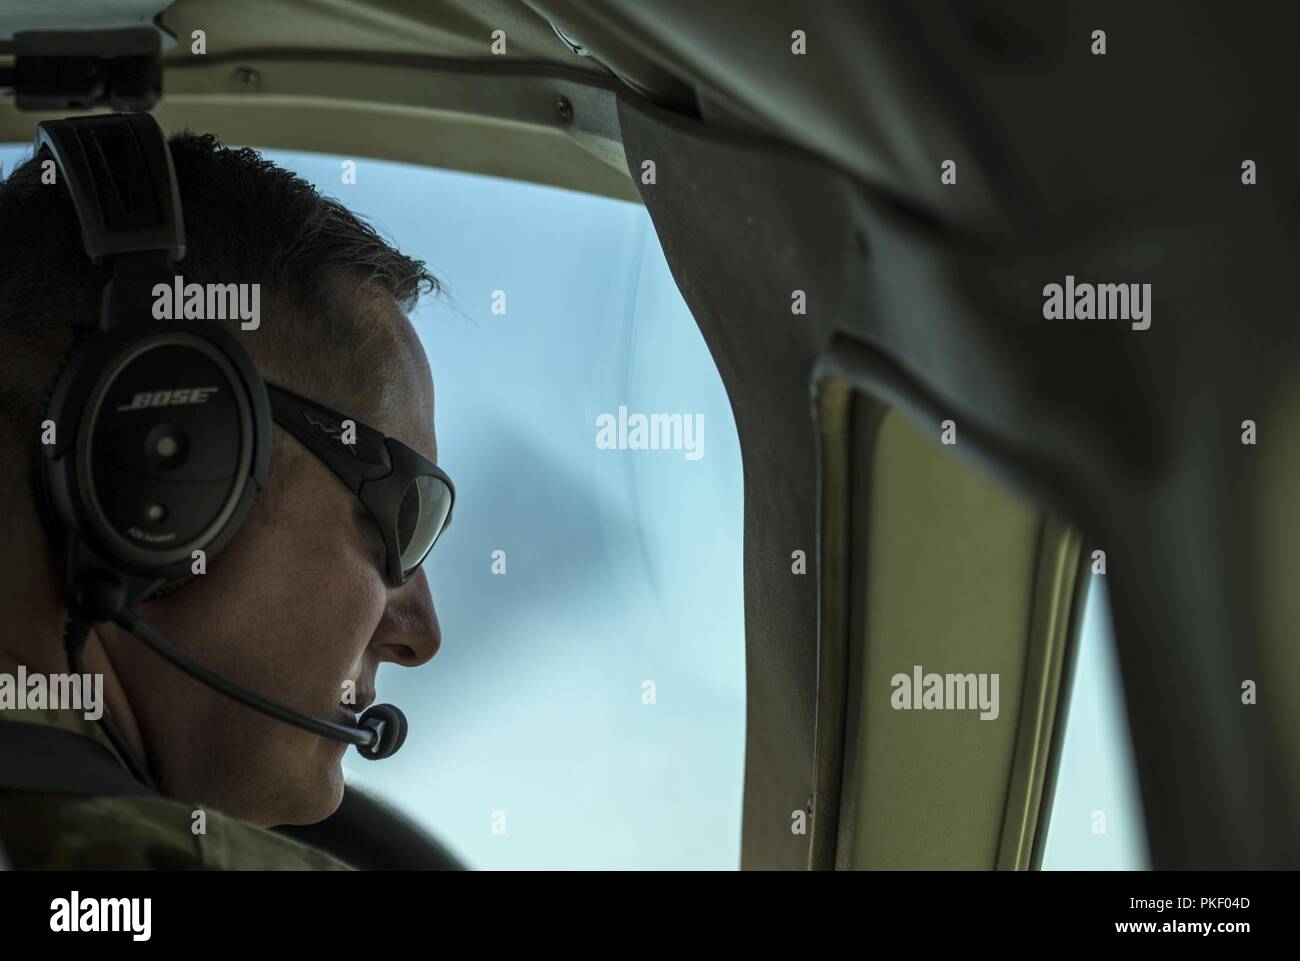 KABUL, Afganistán (25 de julio de 2018, EE.UU.) - Un piloto de un avión Cessna 208B asignada a la 438th ala expedicionaria aérea como parte del tren aconsejamos asistir Command-Air (TAAC-aire) en el Aeropuerto Internacional de Hamid Karzai (HKIA), Afganistán, comprueba el lado derecho del espacio aéreo para cualquier llegada del avión el 25 de julio de 2018. La misión de capacitar, asesorar y ayudar Command-Air es capacitar, asesorar y ayudar a la Defensa Nacional Afgano y las fuerzas de seguridad para el desarrollo profesional, capaz y sostenibles de la Fuerza Aérea. Foto de stock